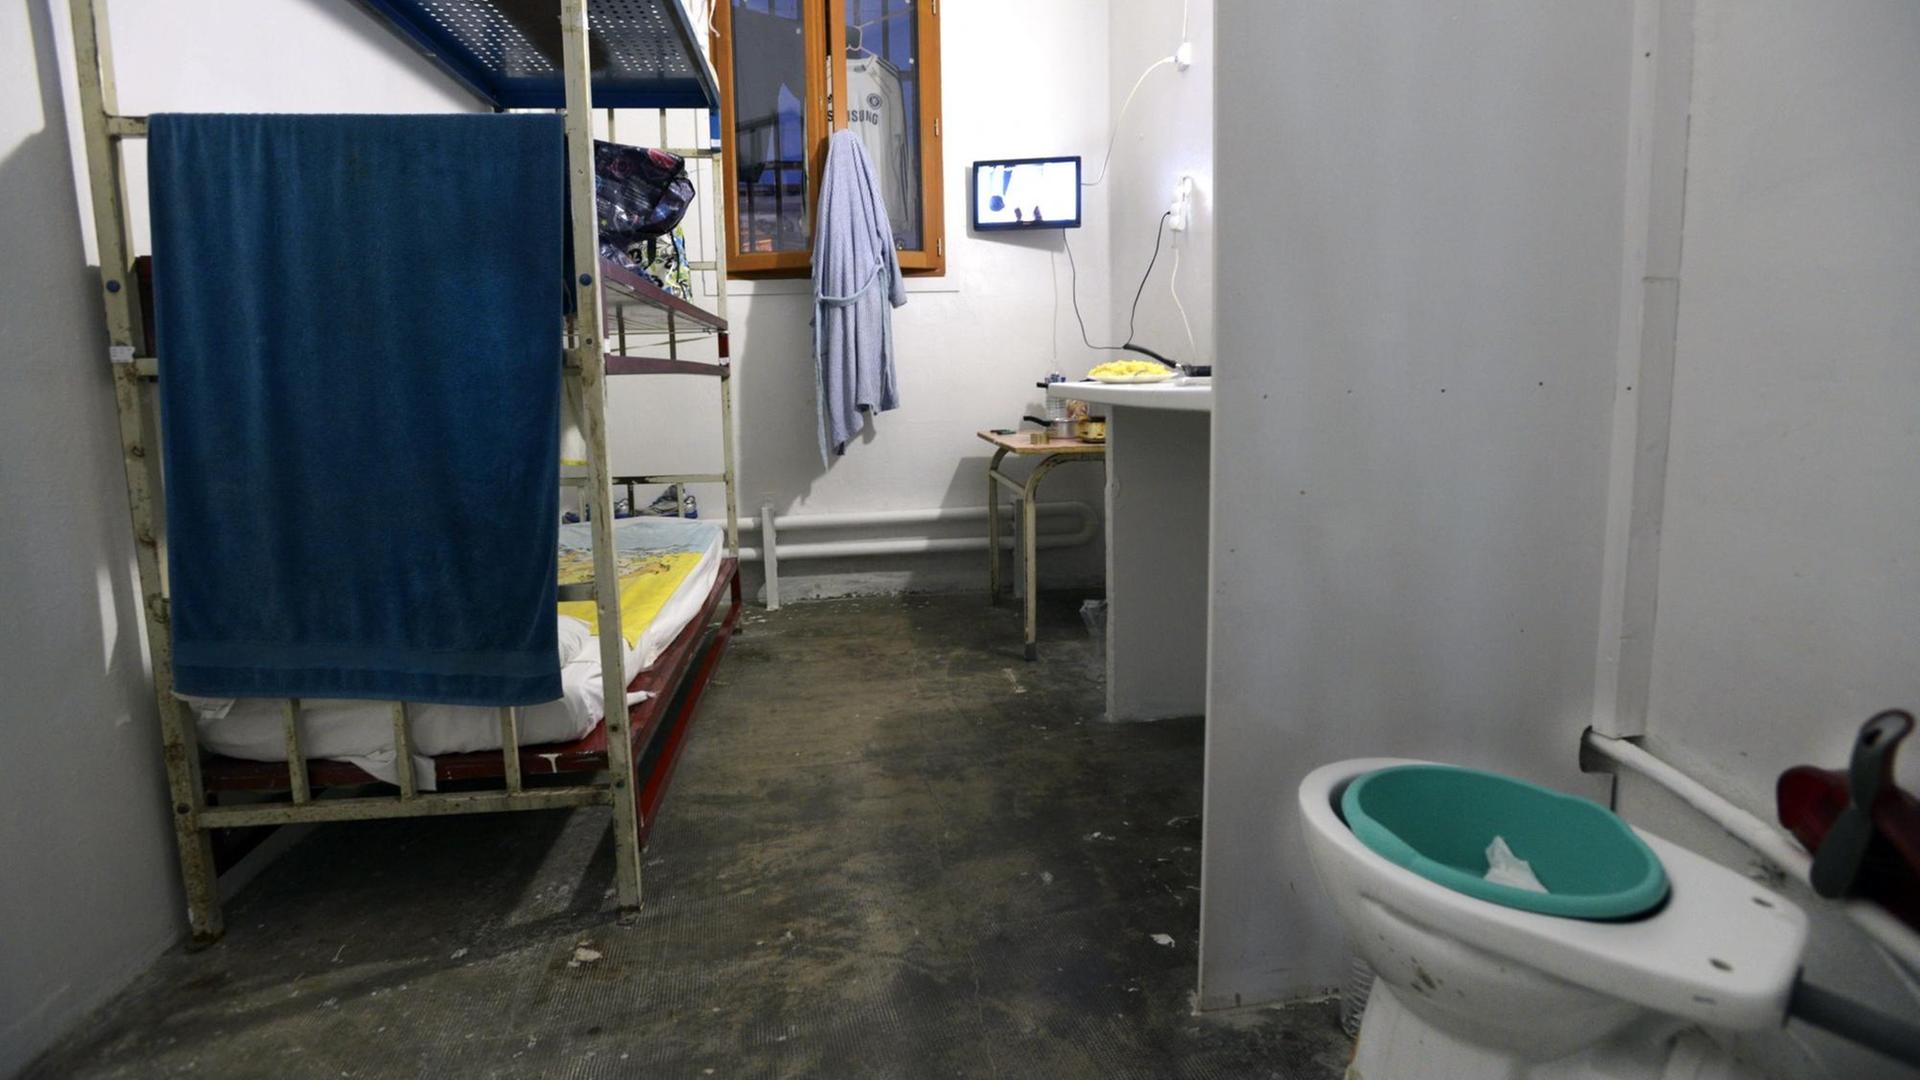 Fehlende Privatssphäre und Enge: Frankreichs Seelsorger kritisieren Zustände, wie sie in diesem Gefängnis bei Marseille herrschen